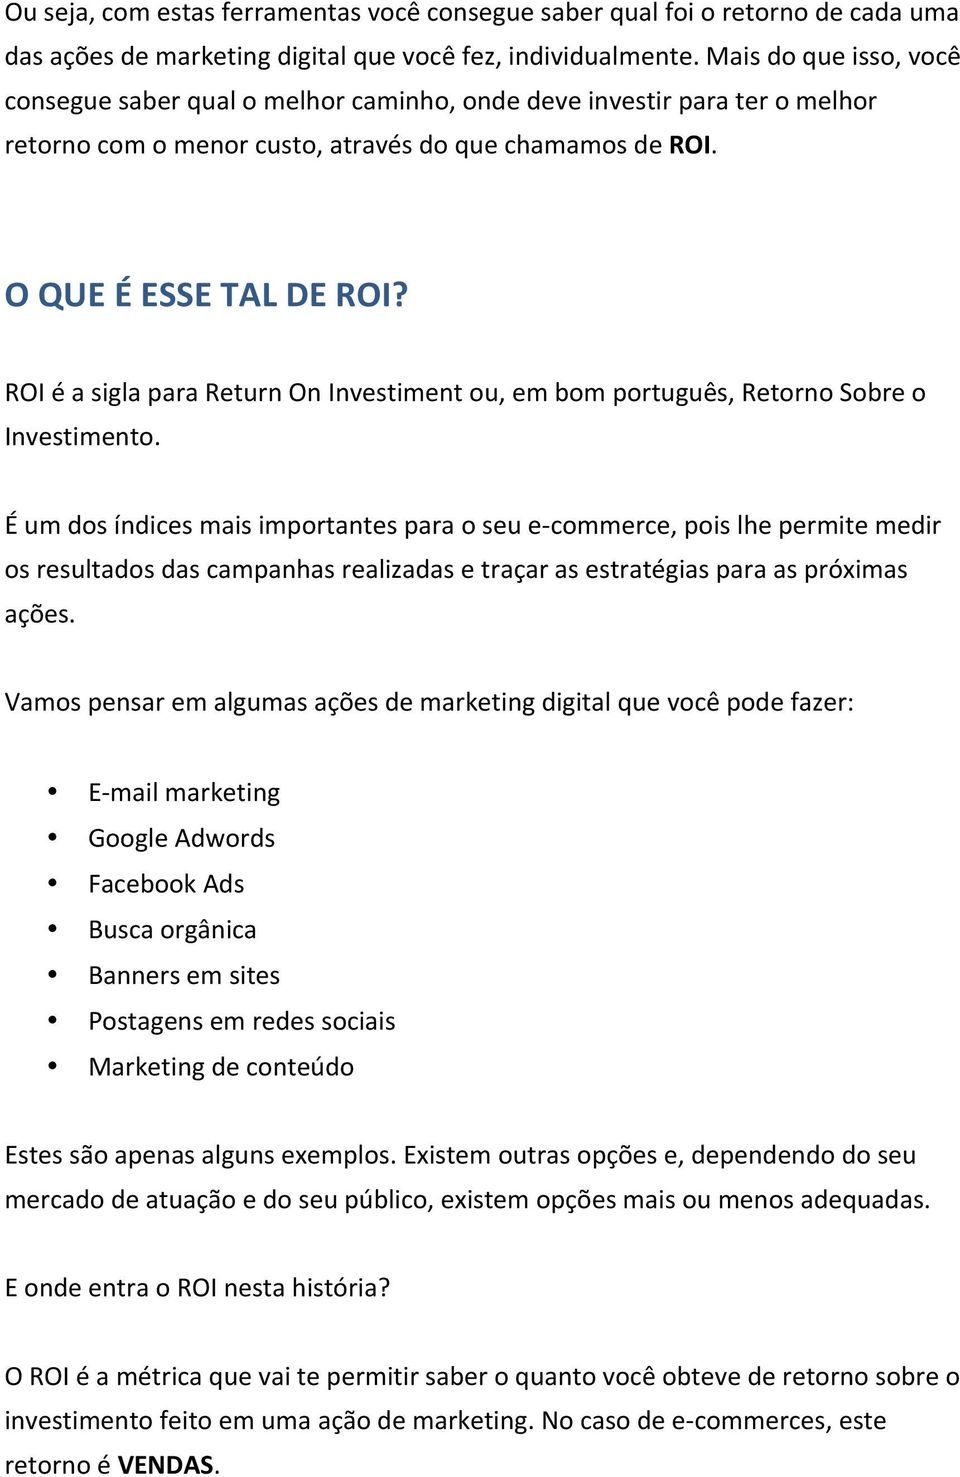 ROI é a sigla para Return On Investiment ou, em bom português, Retorno Sobre o Investimento.